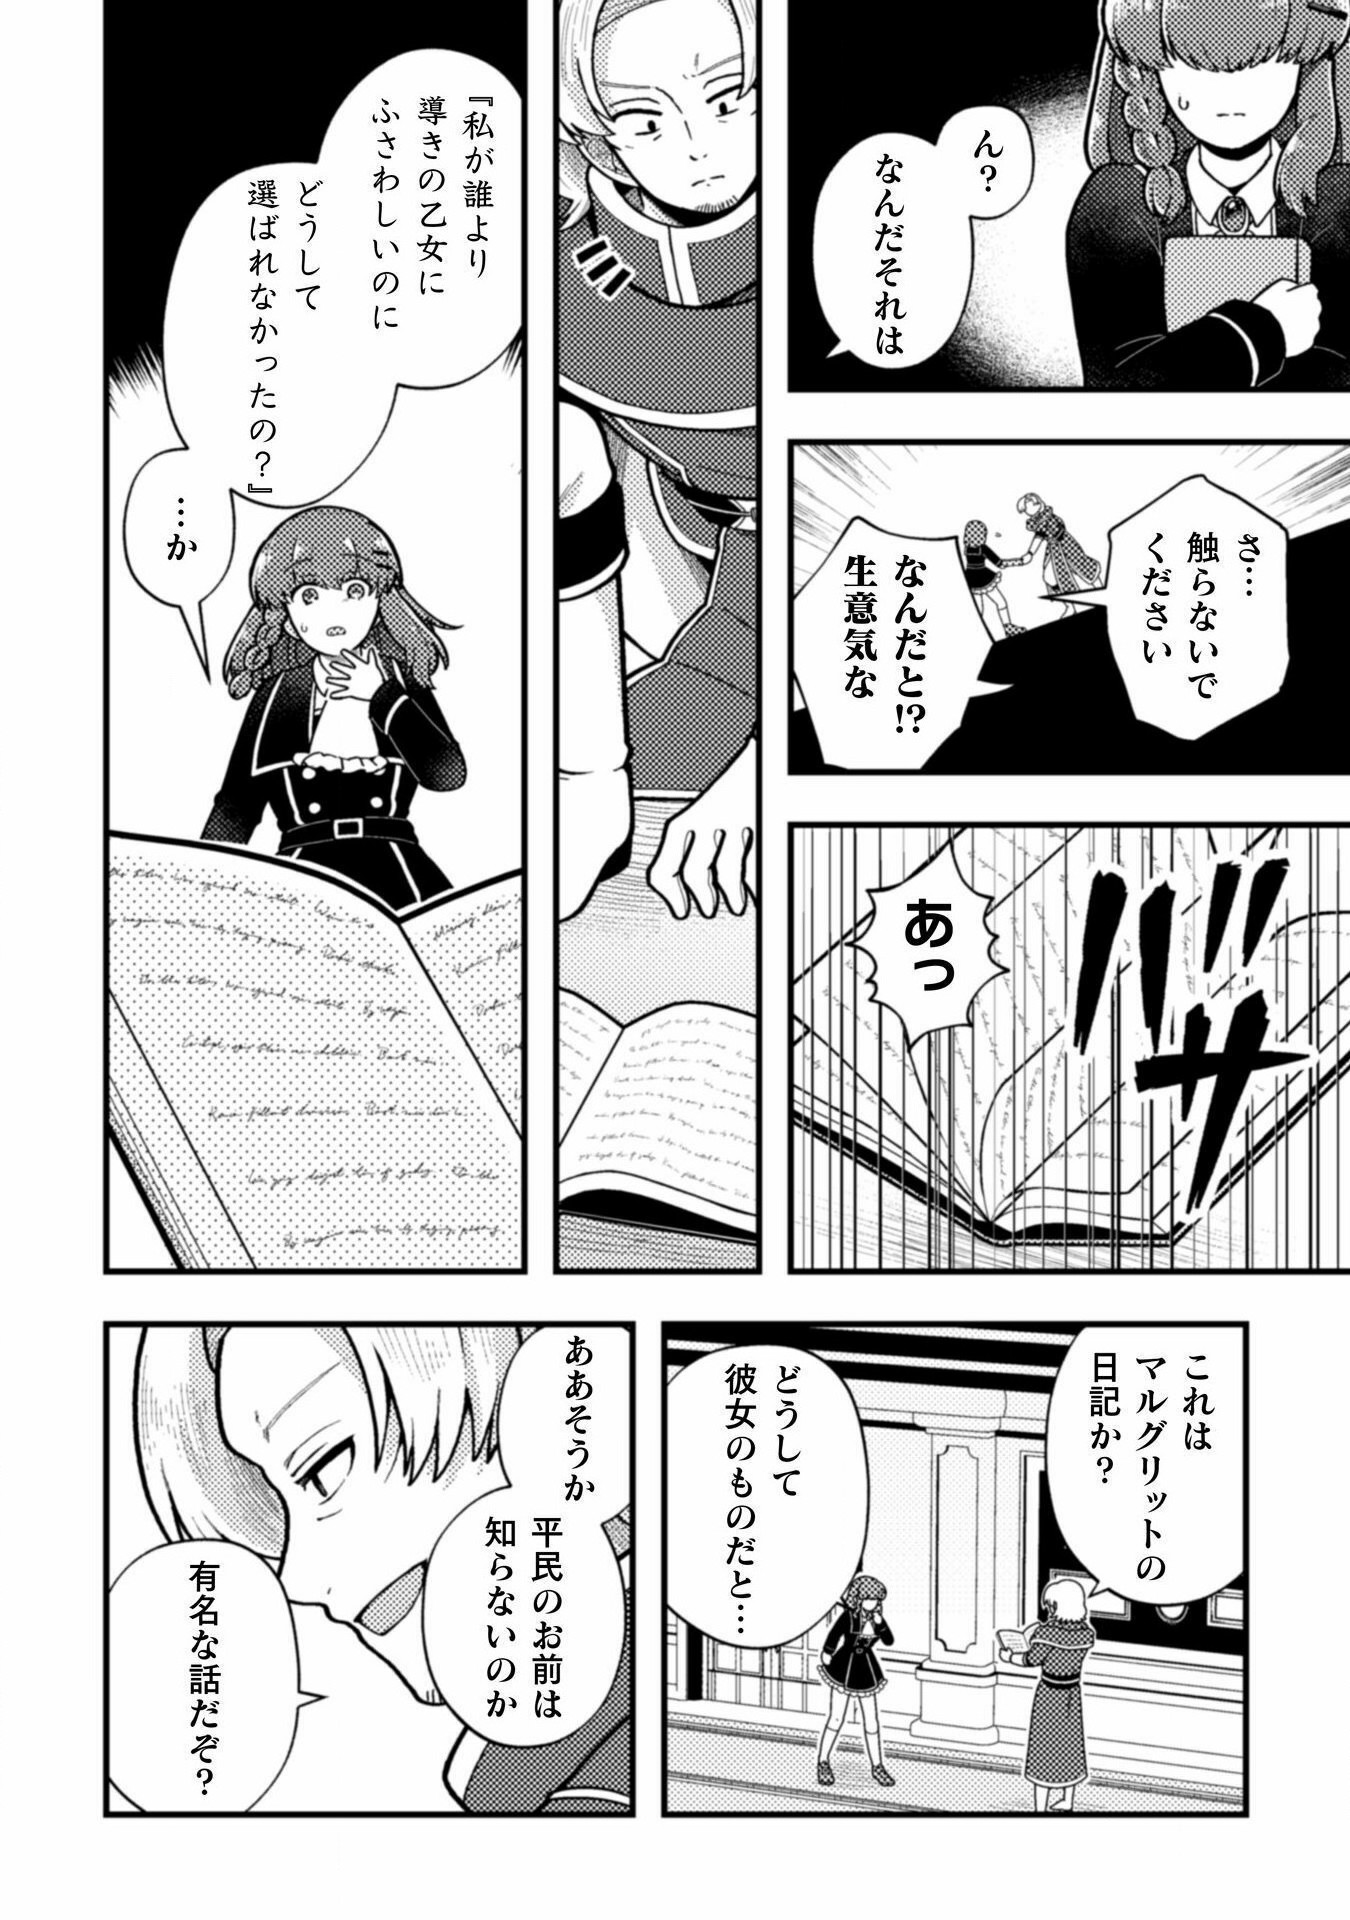 Otome Game no Akuyaku Reijou ni Tensei shitakedo Follower ga Fukyoushiteta Chisiki shikanai - Chapter 21 - Page 26